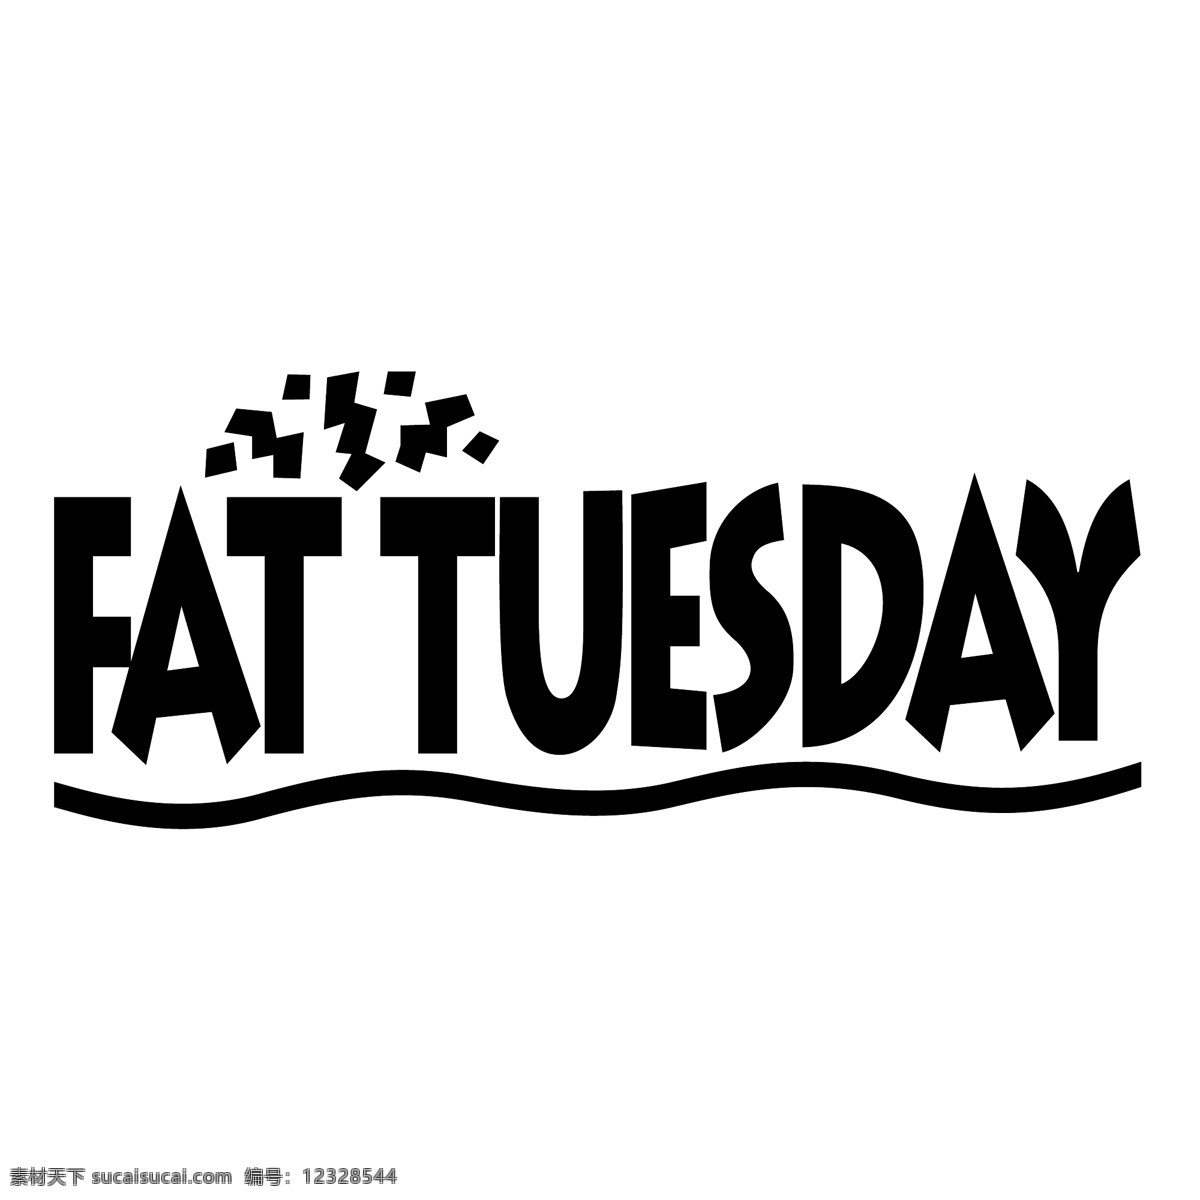 脂肪的星期二 胖 胖的星期二 星期二 矢量 脂肪 脂肪游离脂肪 向量 向量的脂肪 游离脂肪 脂肪的载体 免费 蓝色